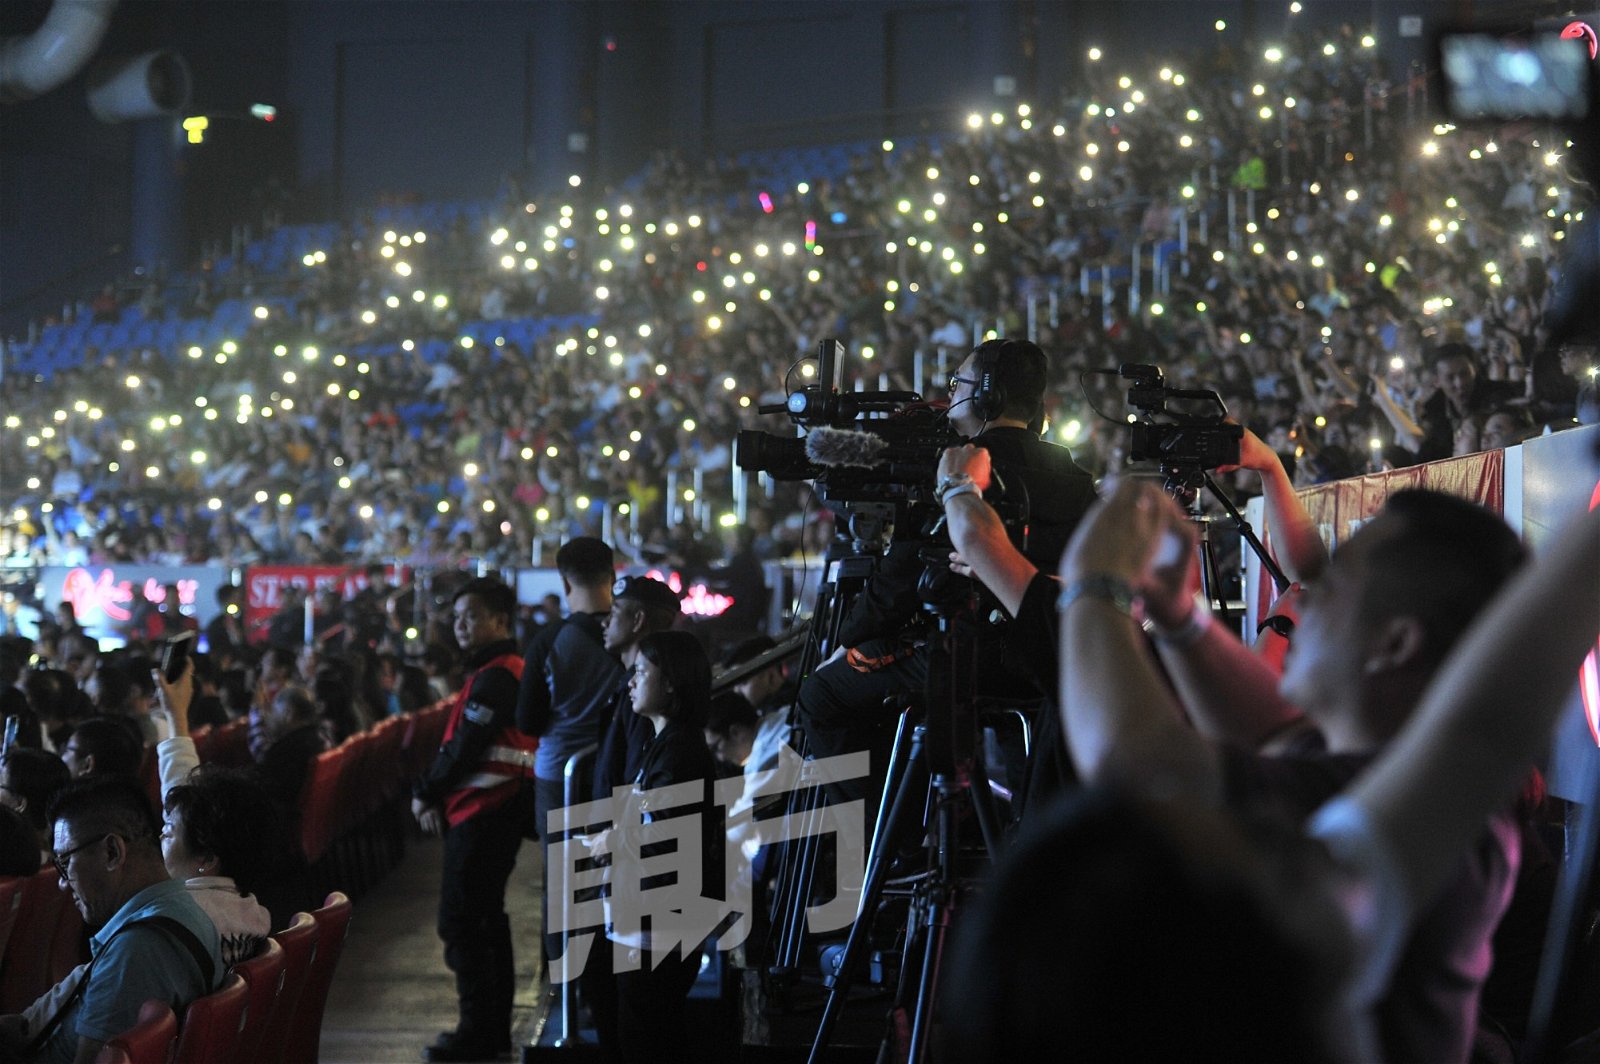 李幸倪演唱《双双》时要求观众开启手机手电筒打造灯海，一片漂亮灯海让她大赞很漂亮。